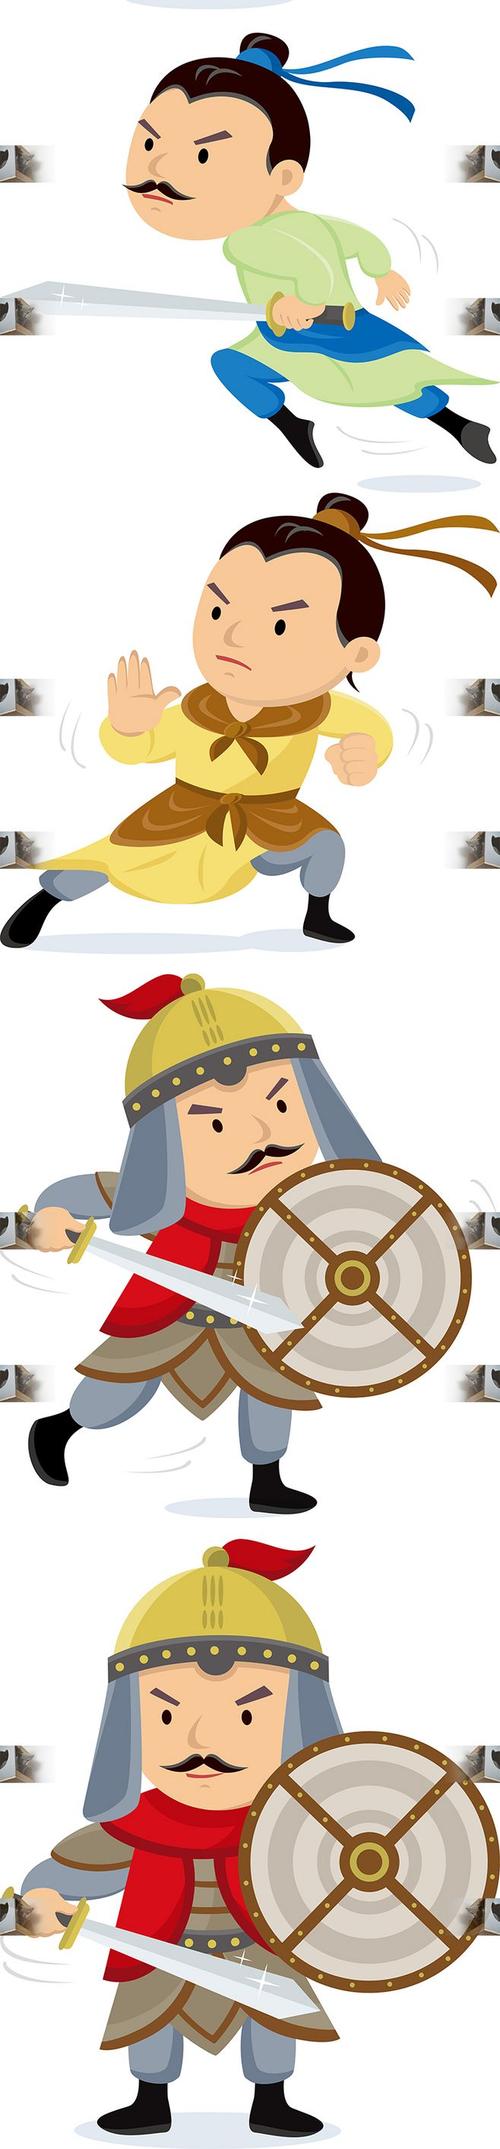 扁平化卡通手绘古代古装士兵人物插画动画游戏banner矢量设计素材